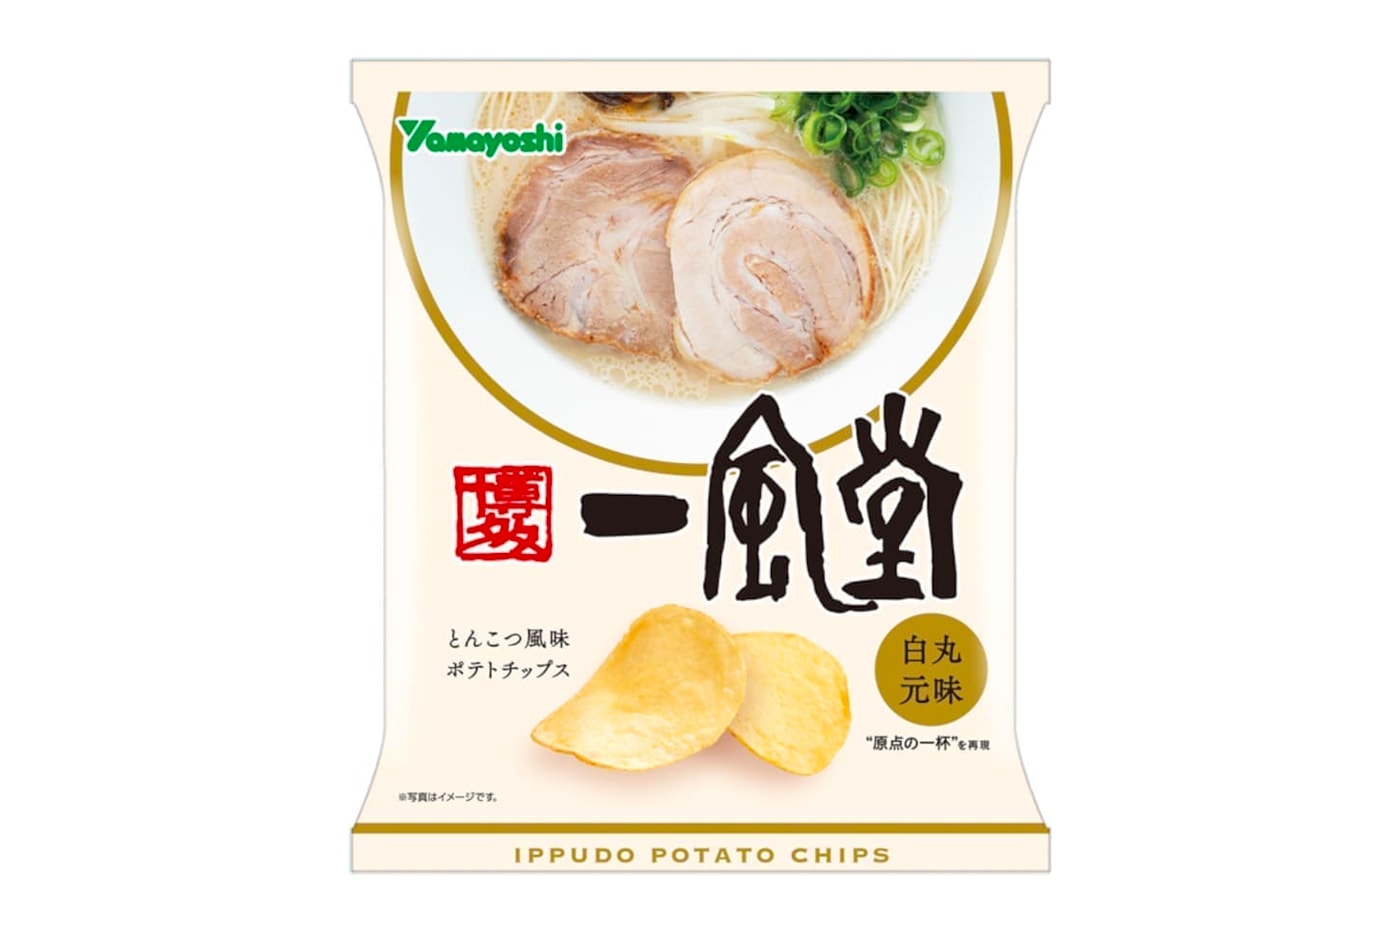 Ippudo 35 Anniversary Tonkotsu Ramen Potato Chips thirty fifth snacks crisps noodles Shiromaru Motoaji Potato Chips Yamayoshi Seika chain